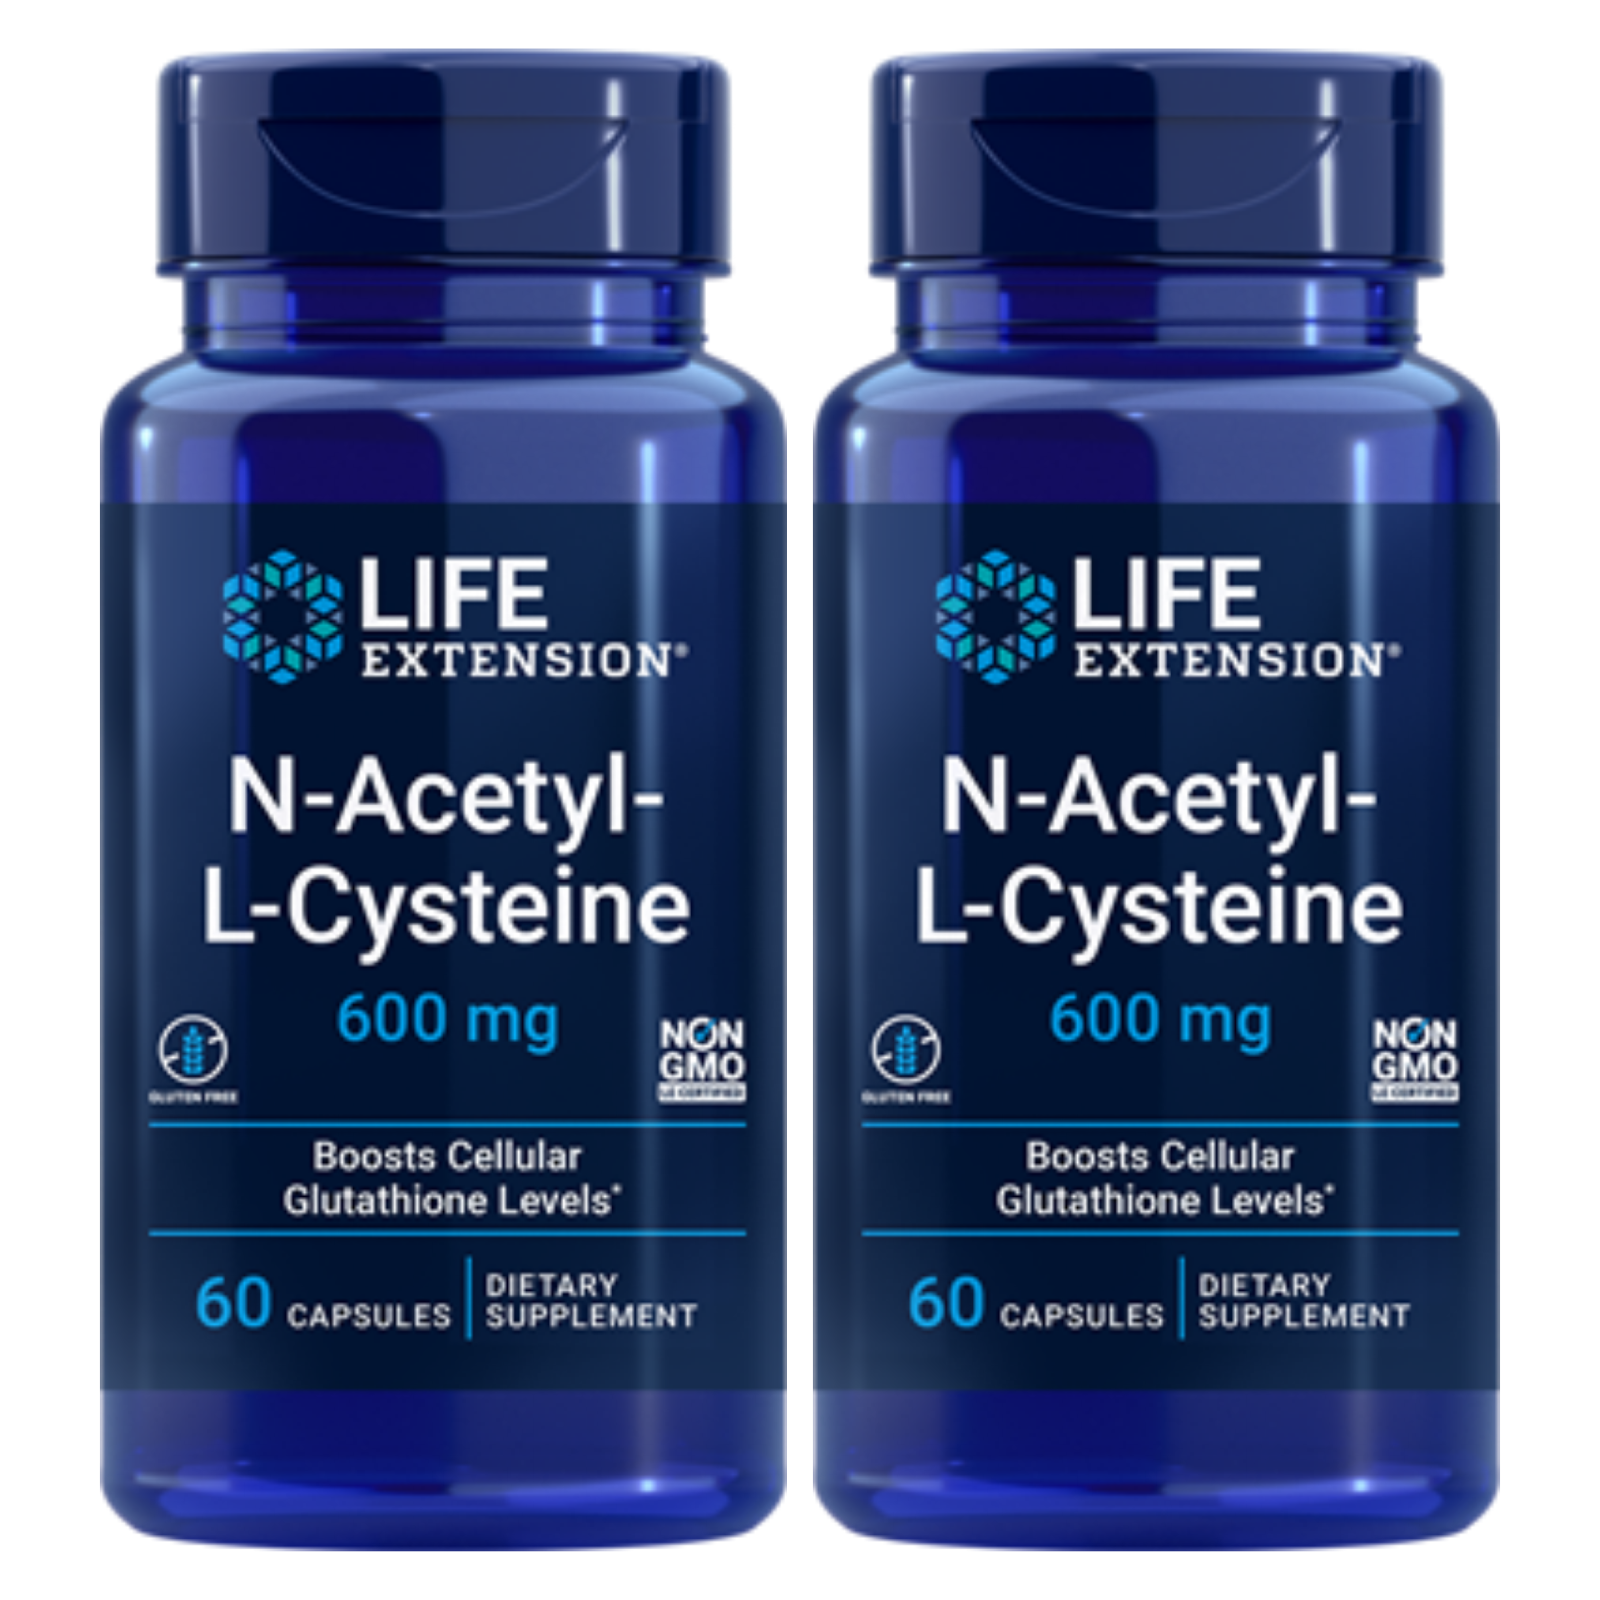 N-ACETYL- L- CYSTEINE (NAC)  600mg 60 Capsule LIFE EXTENSION - 2 BOTTLES.